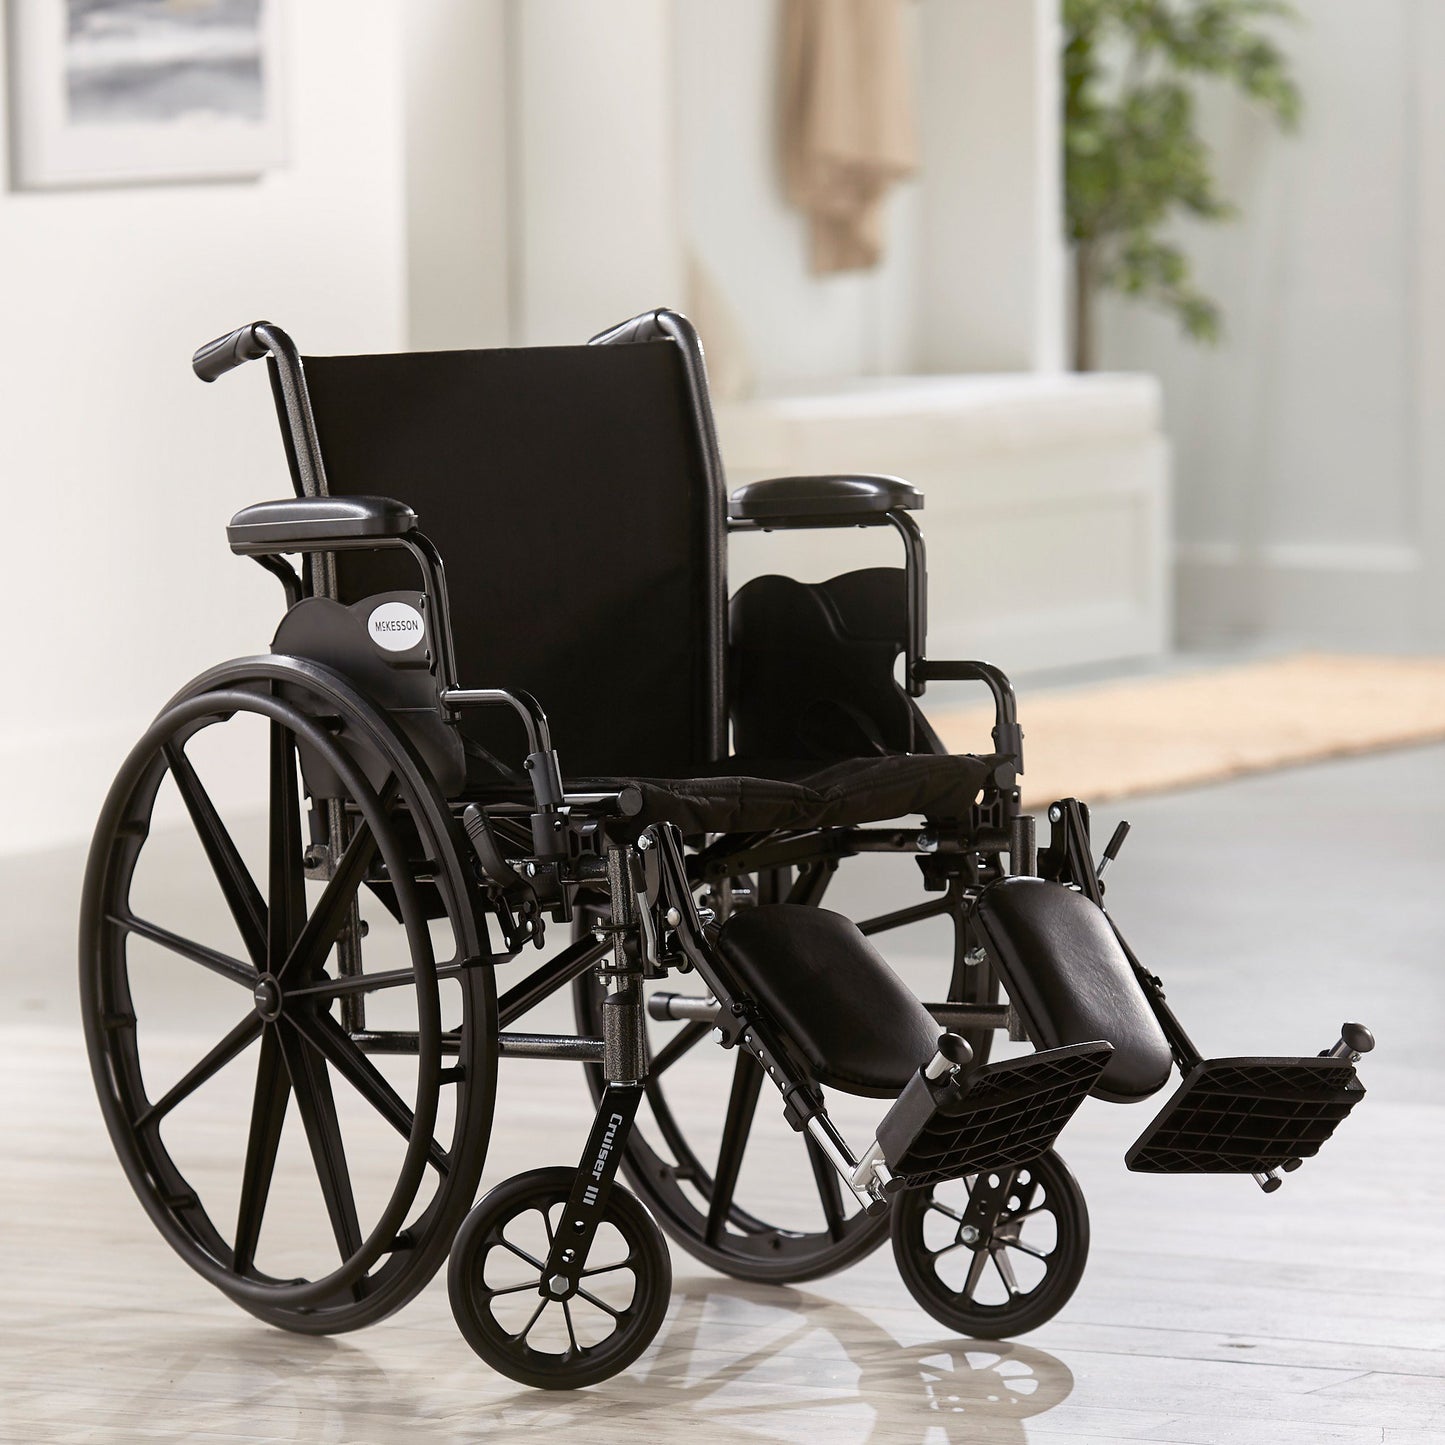 McKesson Lightweight Wheelchair, 18 Inch Seat Width, Legrest